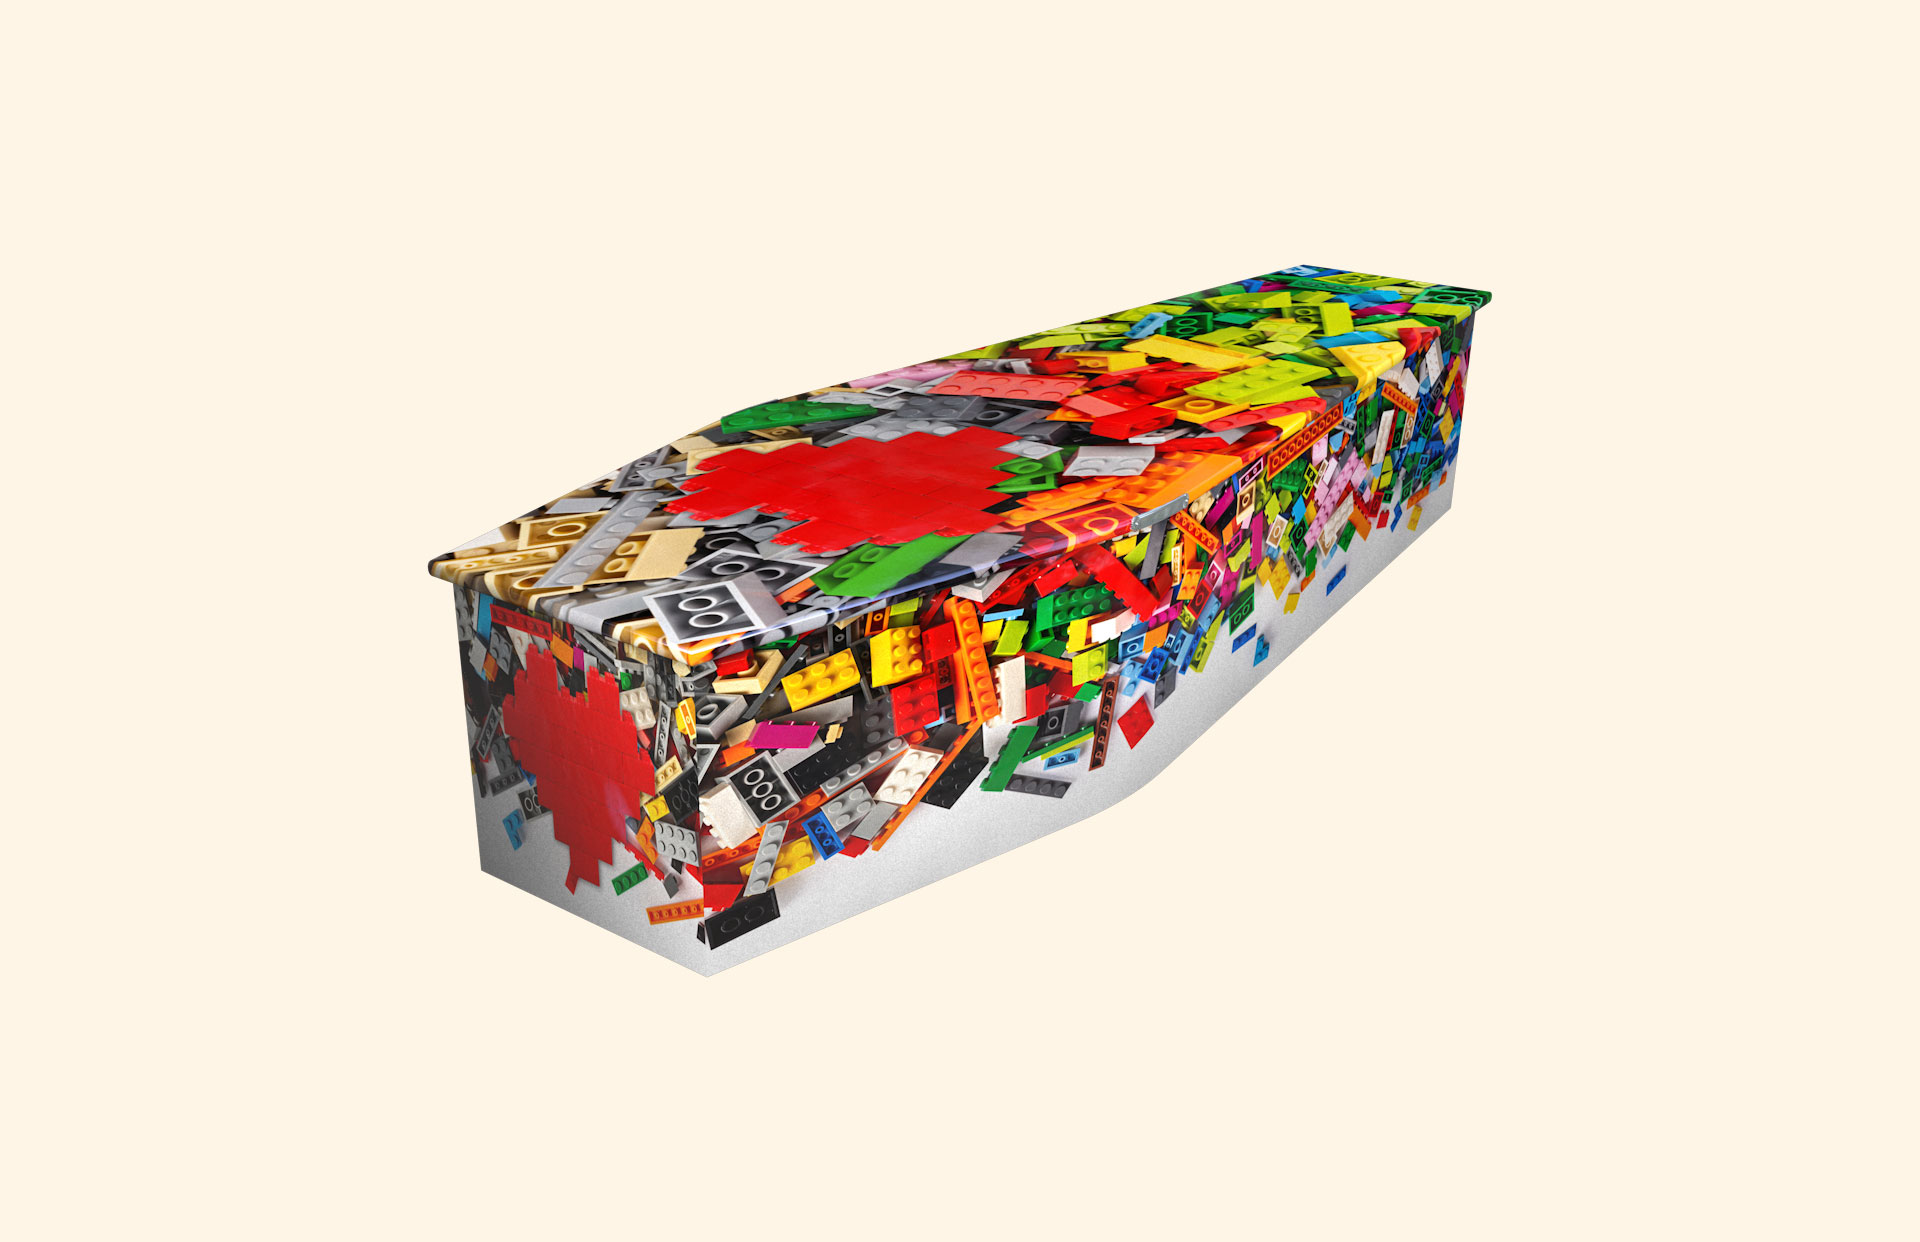 Toy Bricks design on a child coffin